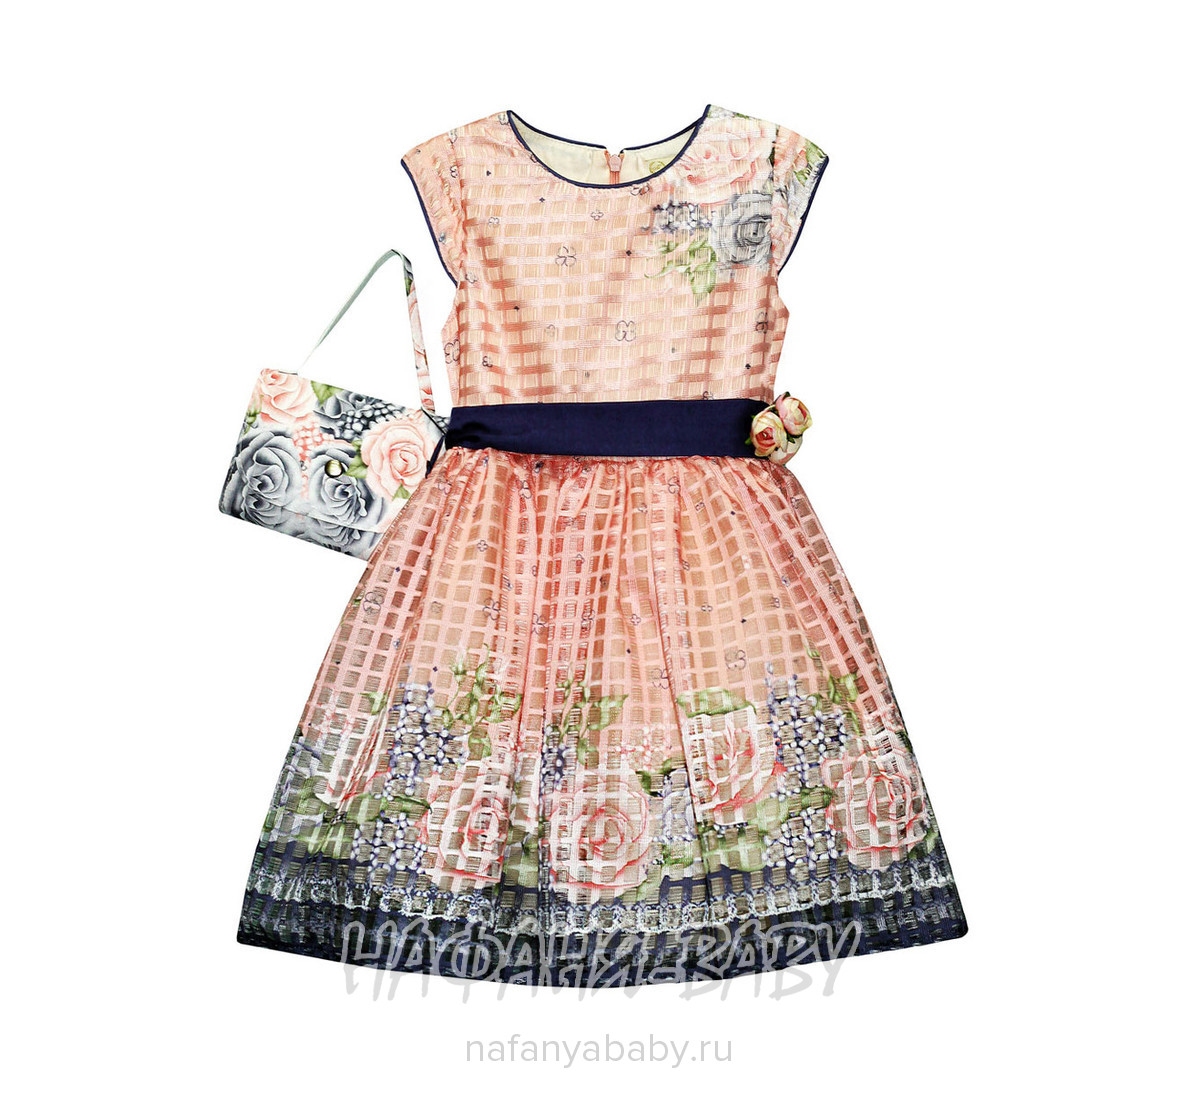 Детское платье + сумочка MOONSTAR, купить в интернет магазине Нафаня. арт: 3776.